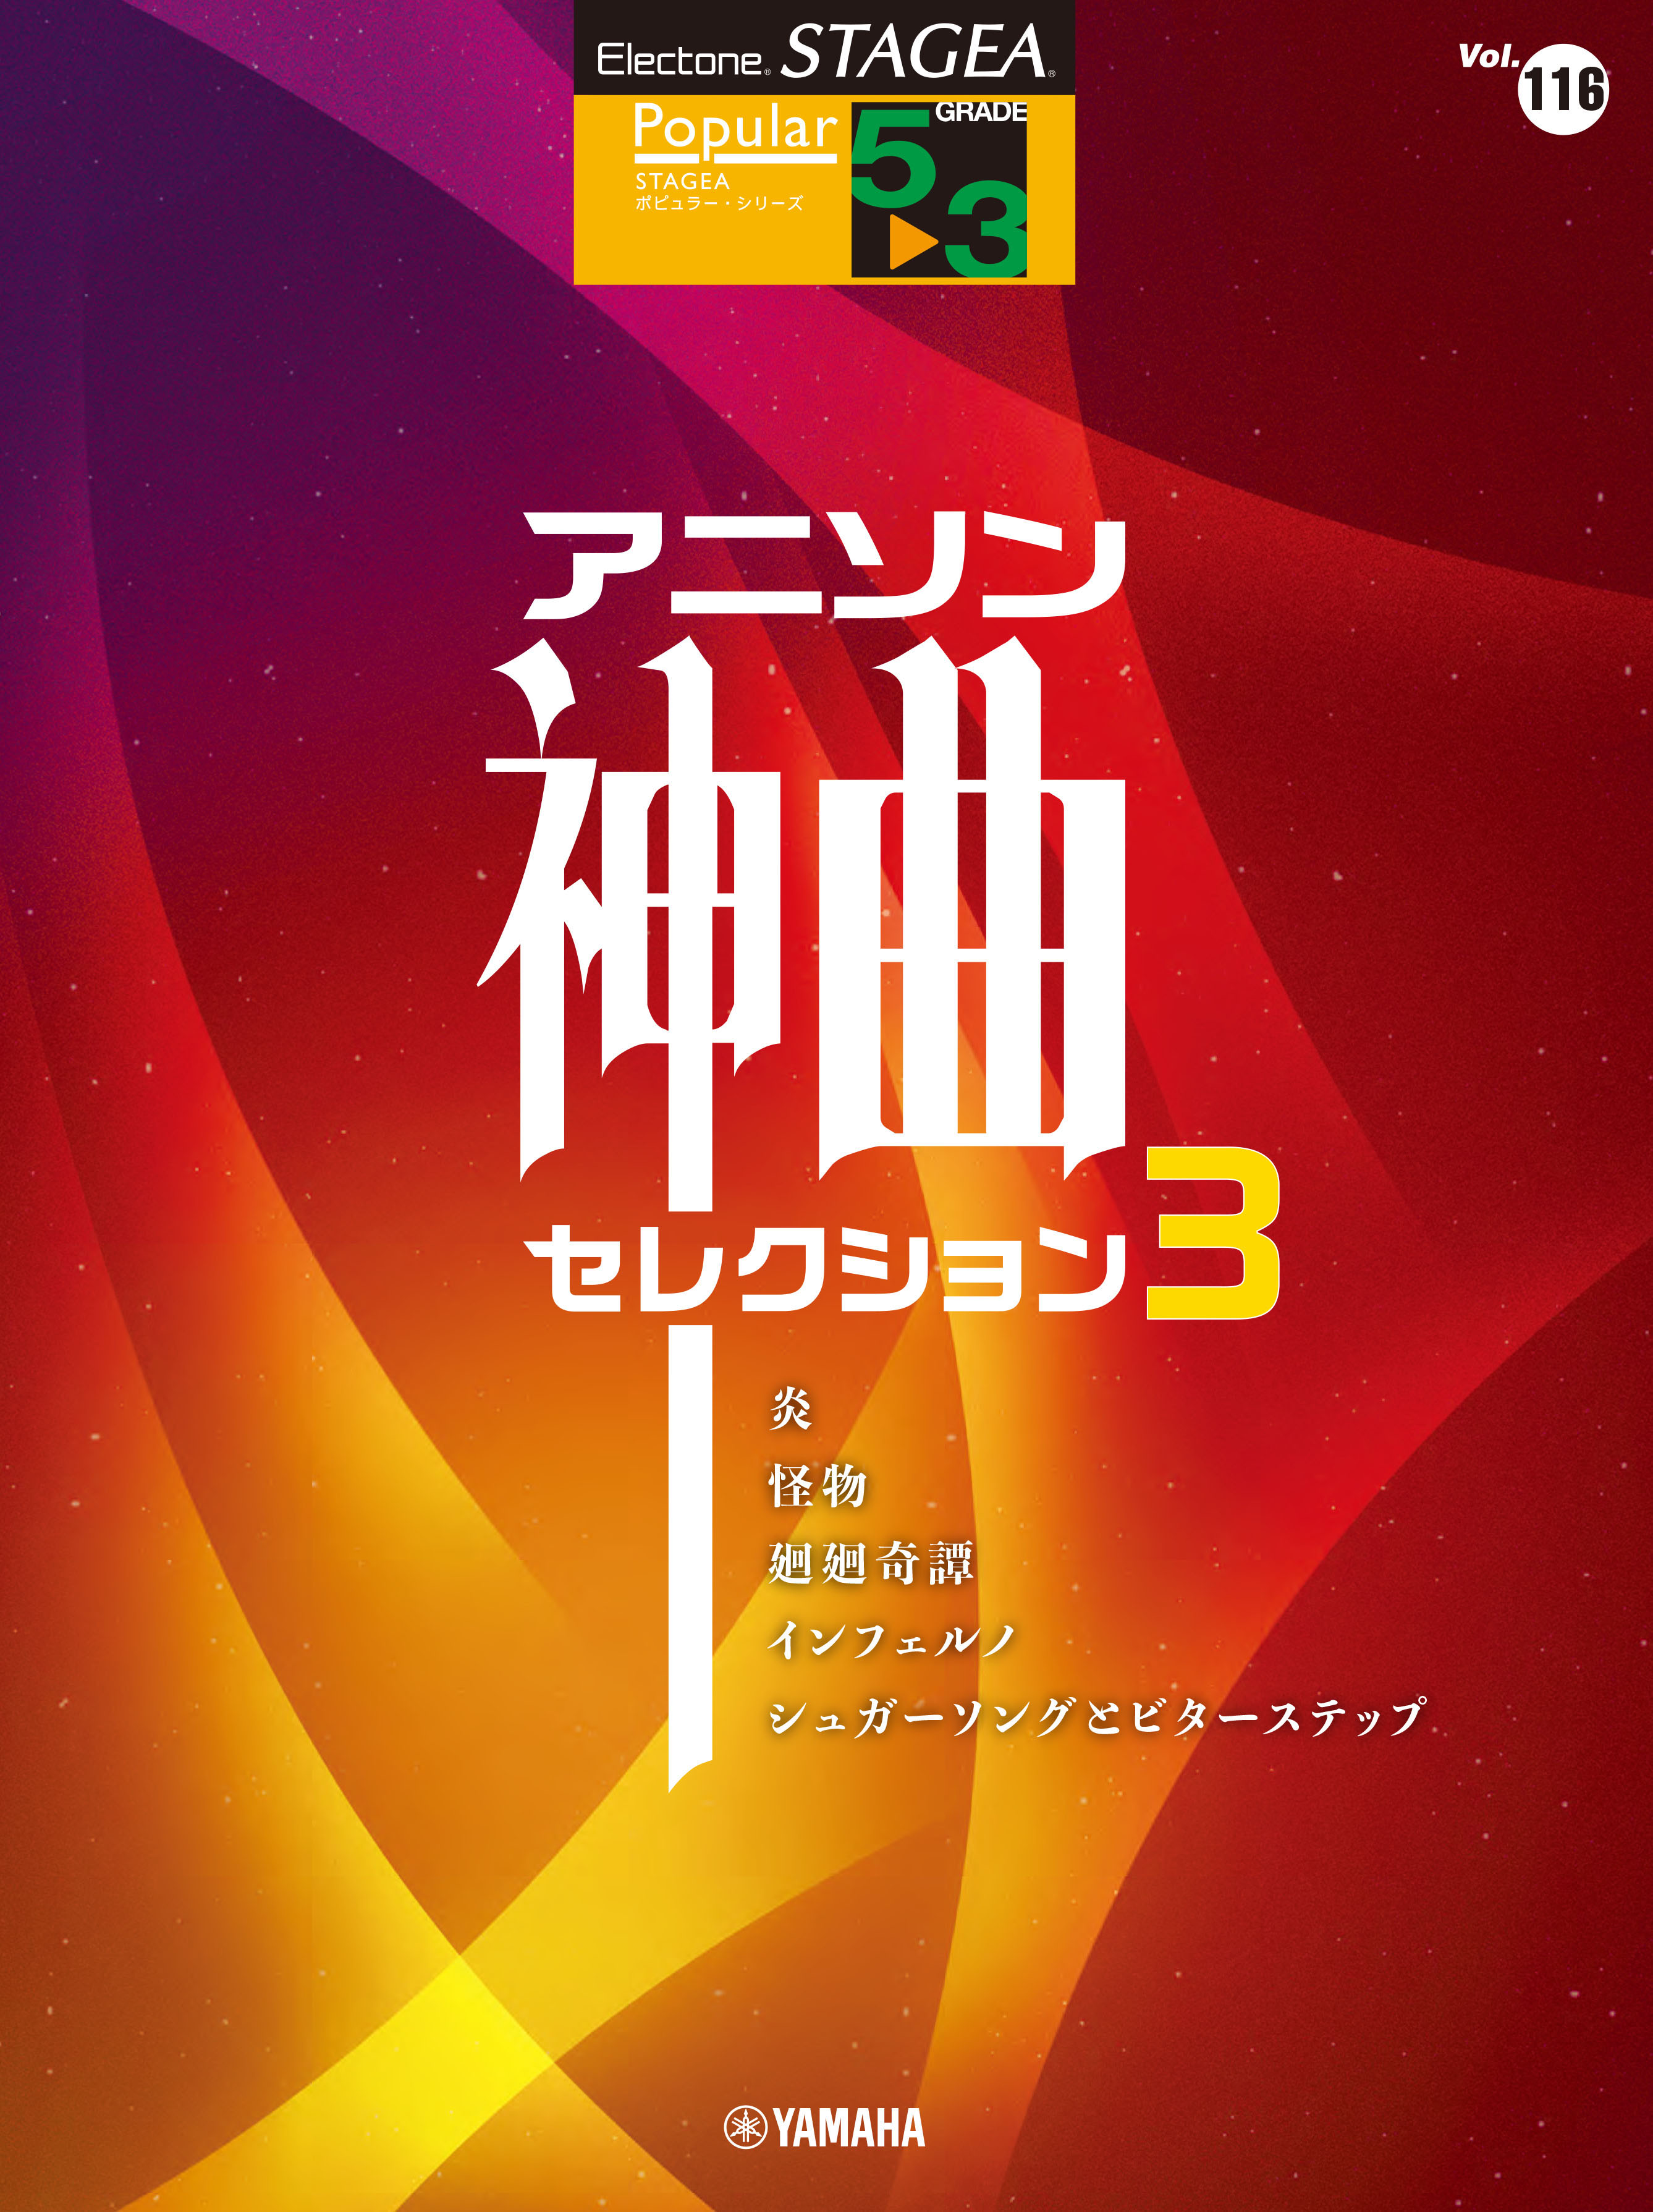 エレクトーン Stagea ポピュラー 5 3級 Vol 116 アニソン神曲 セレクション3 6月25日発売 Newscast